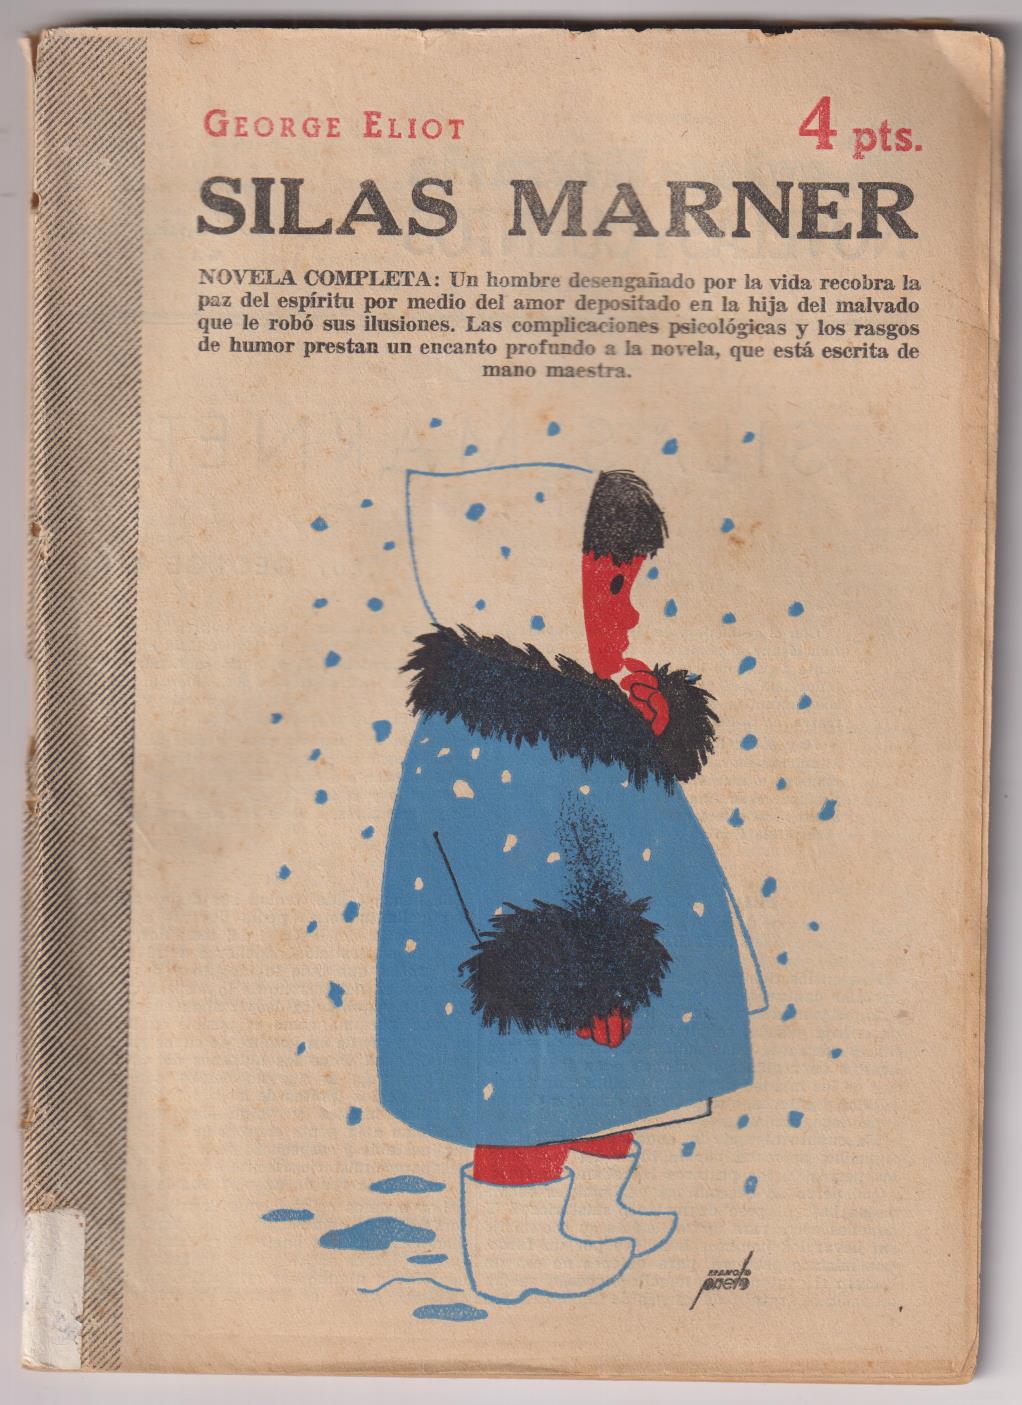 Revista Literaria Novelas y Cuentos nº 1220. Silas Marner por Georges Eliot. Año 1956